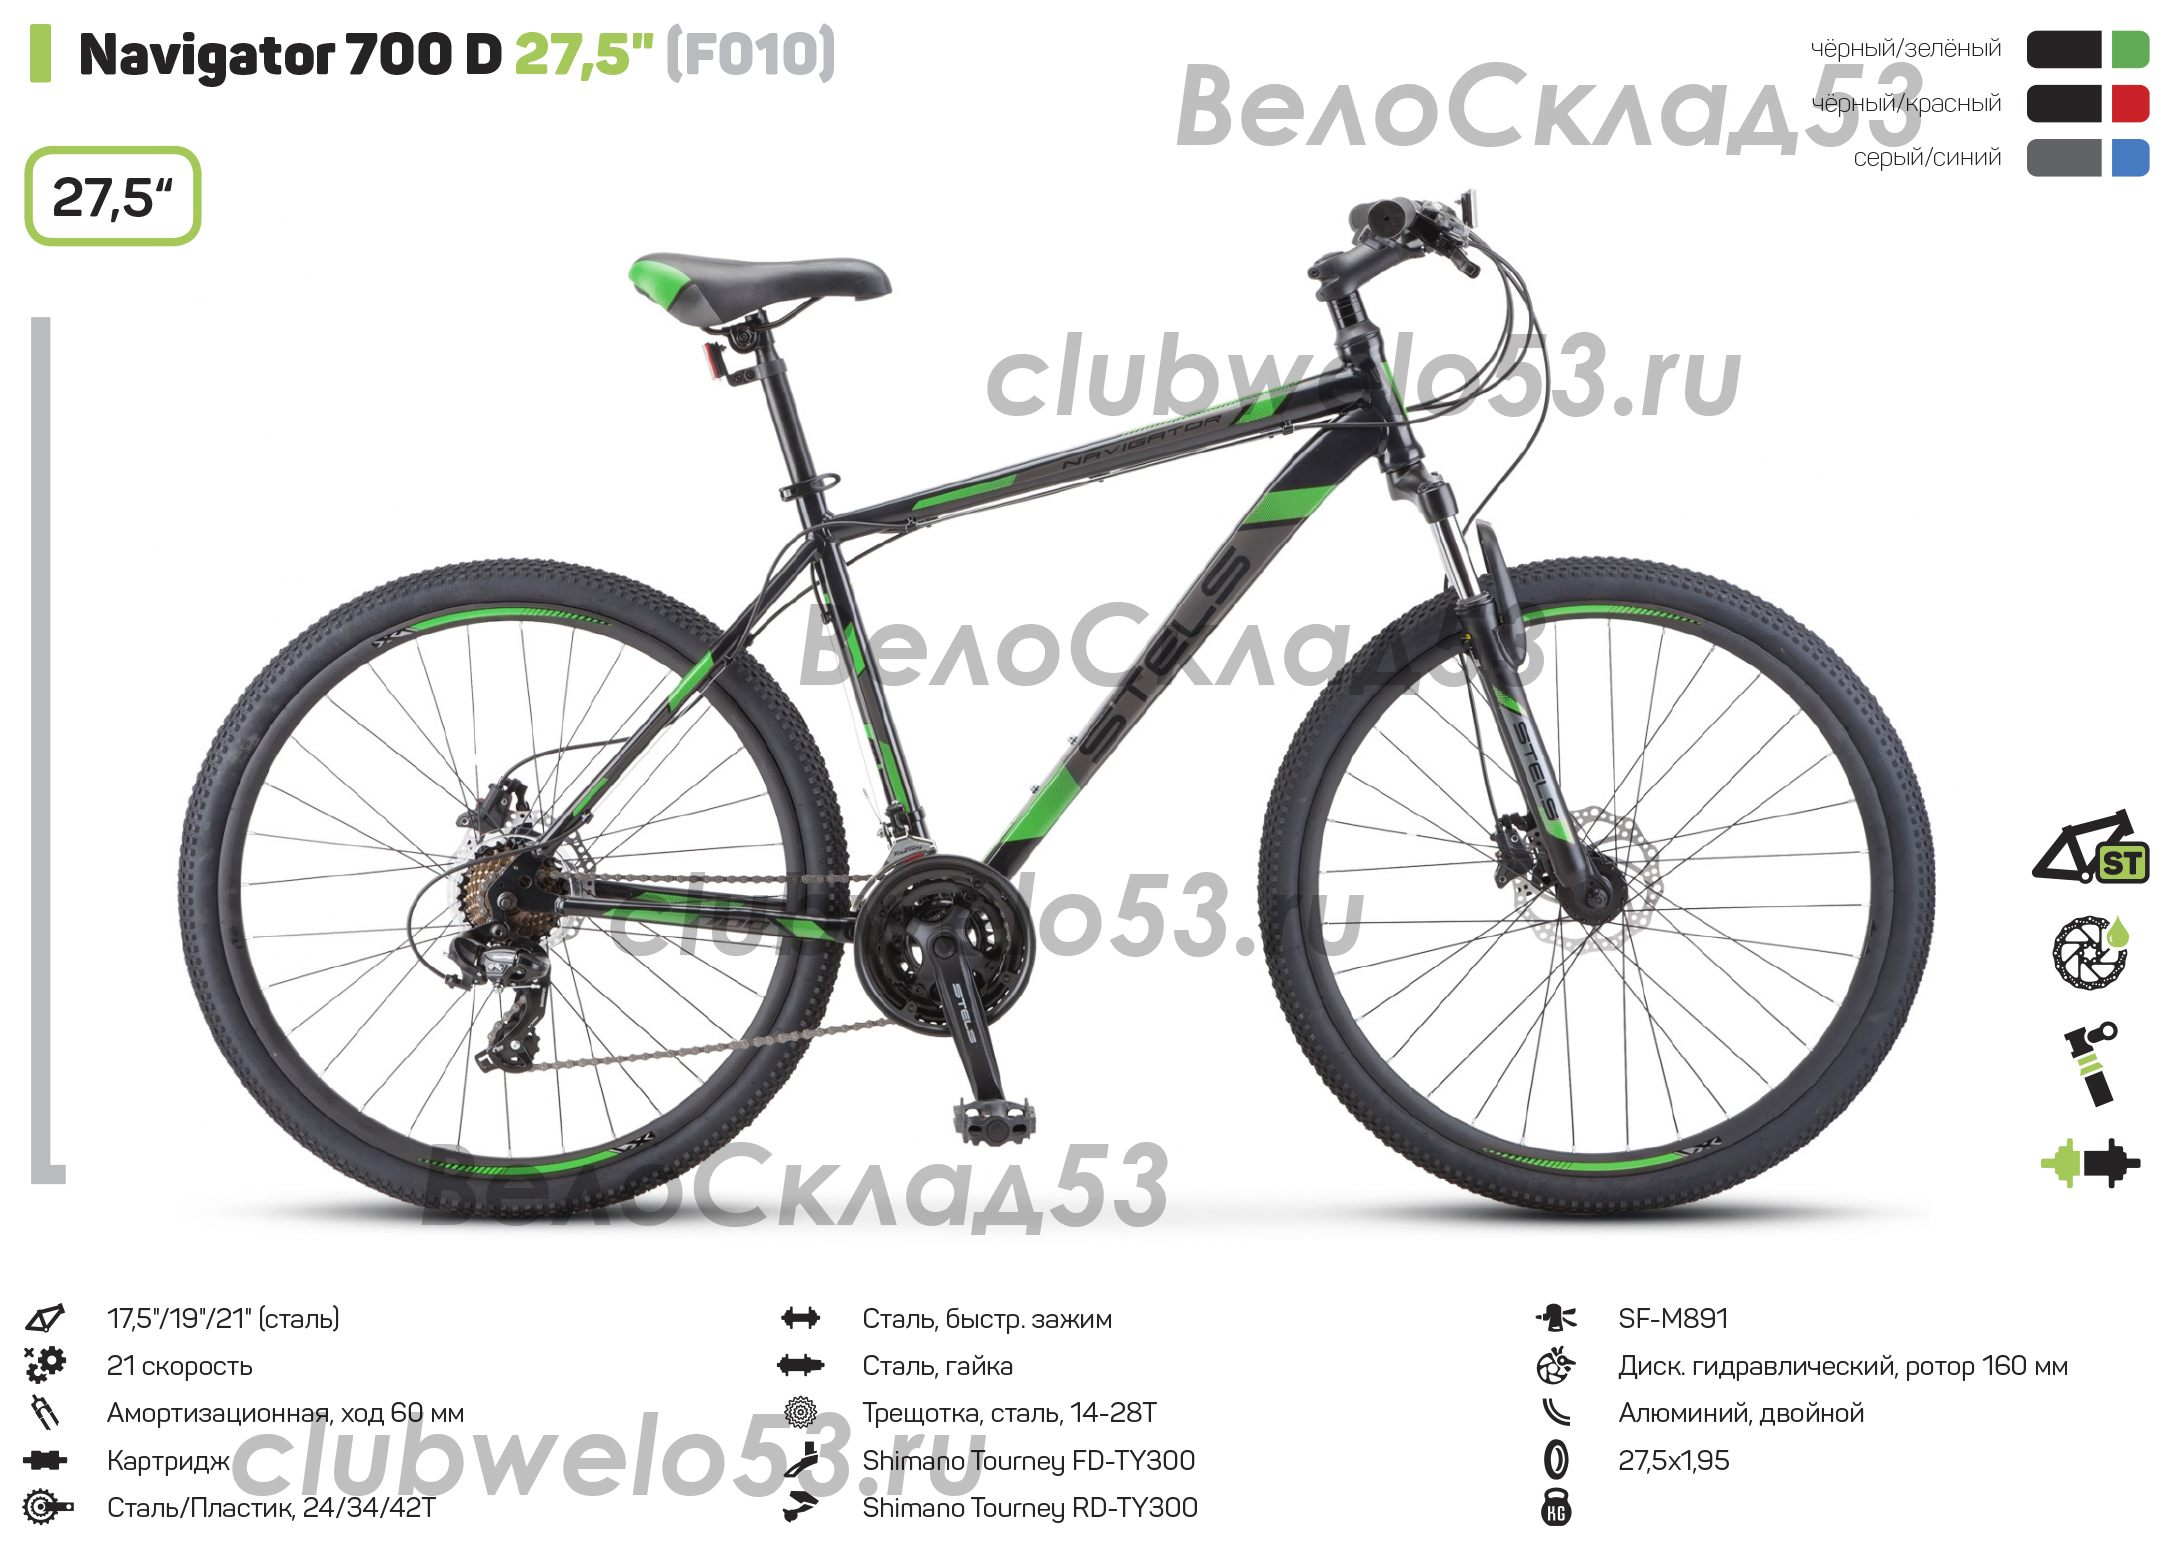 Stels navigator 700 md 27.5 v010 (2018) отзывы | 14 честных отзыва покупателей о велосипеды stels navigator 700 md 27.5 v010 (2018) | vse-otzivi.ru